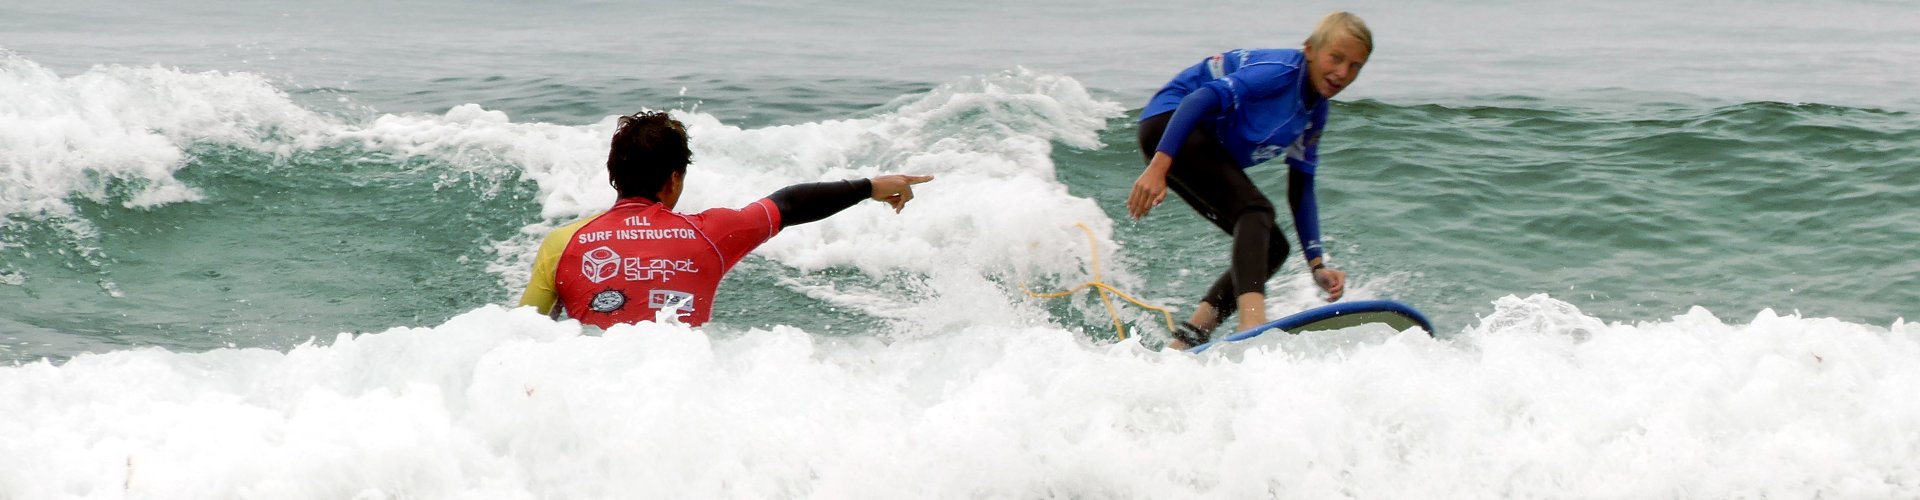 Escuela de surf junior para adolescentes Surf Camp Cantabria